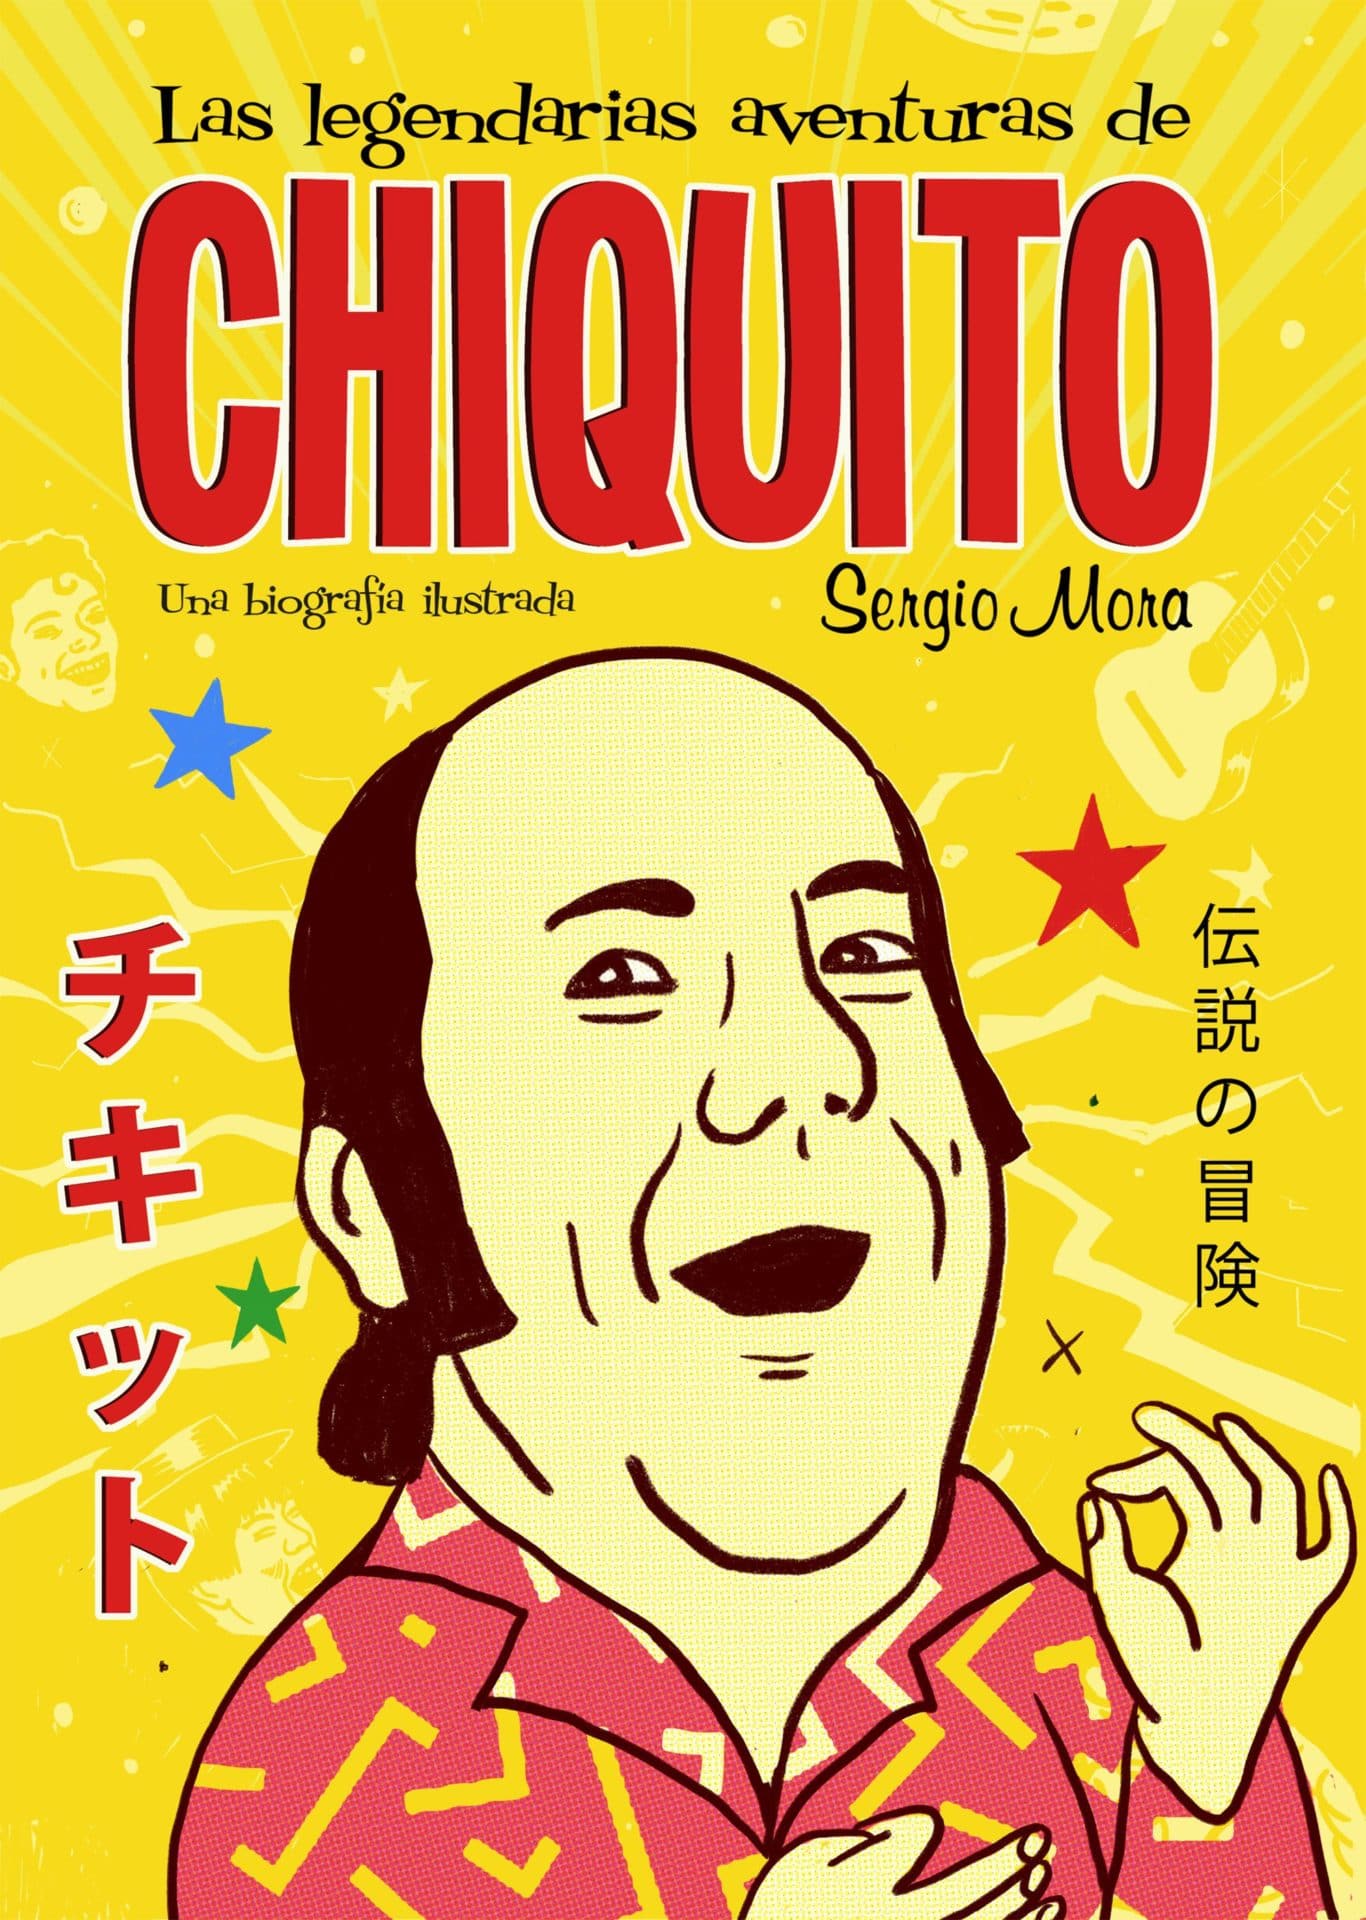 Chiquito in spanish